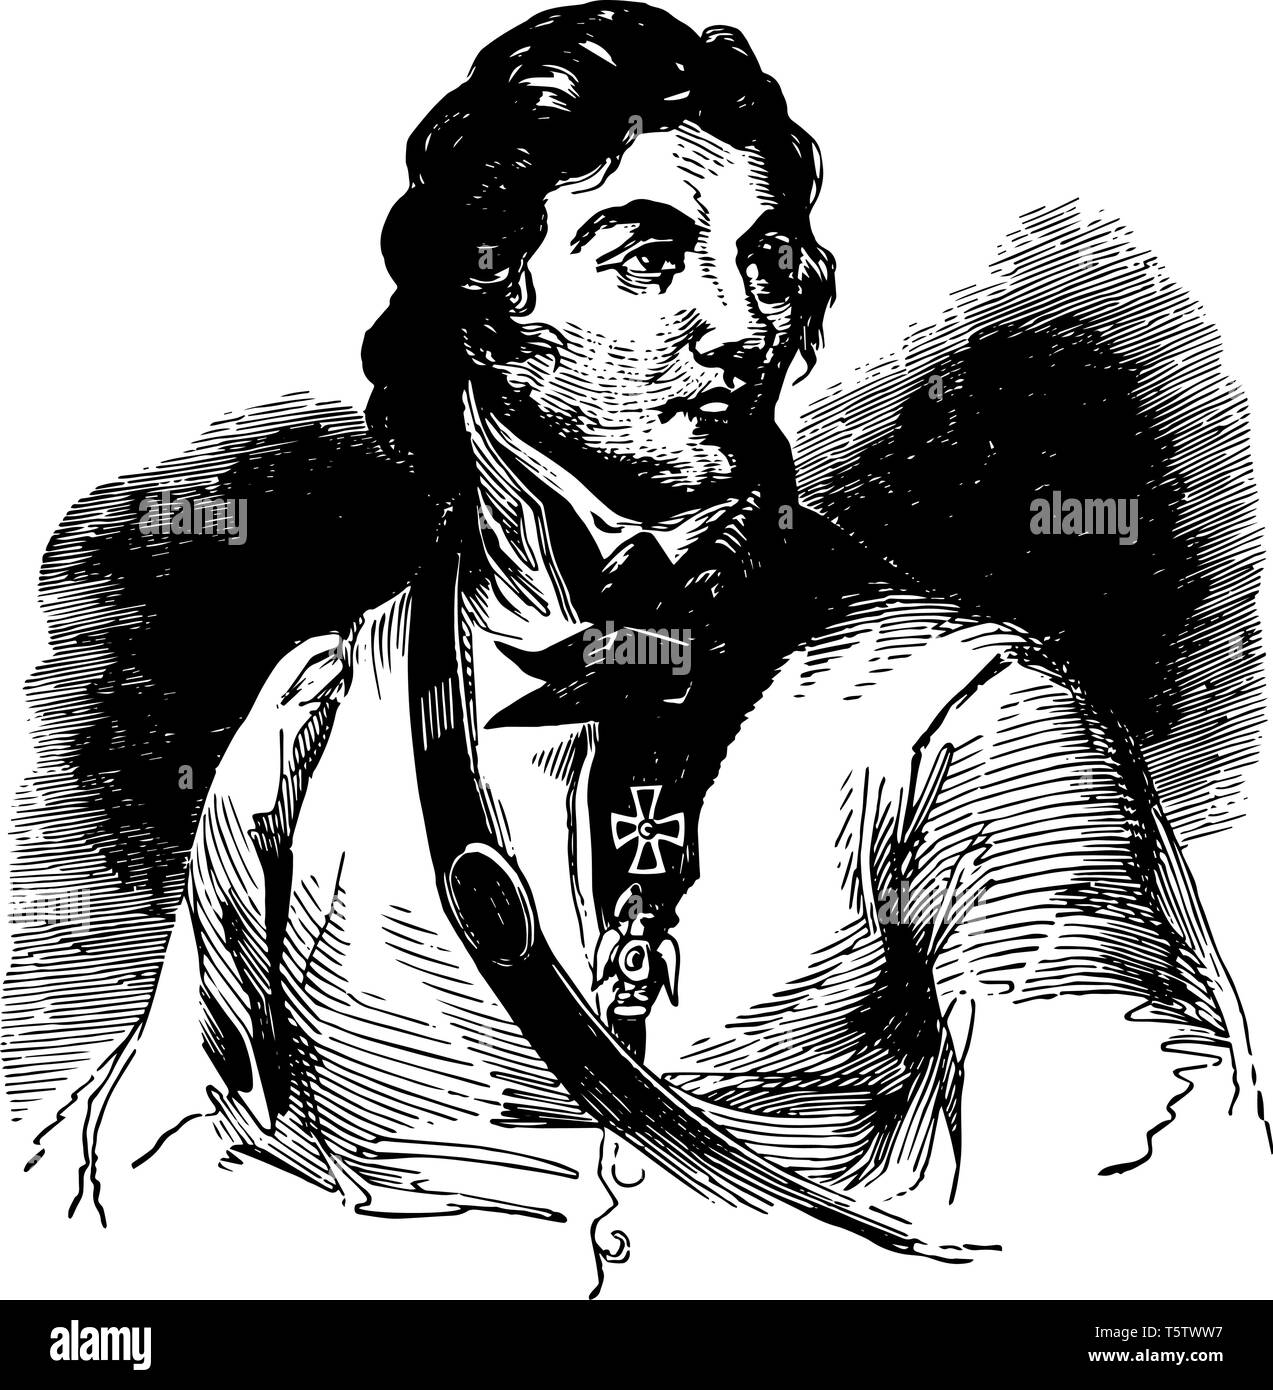 Thaddeus Kosciusko 1746 à 1817, il était un ingénieur militaire lituanienne à chef militaire et qui est devenu un héros national en Pologne Lituanie Bel Illustration de Vecteur